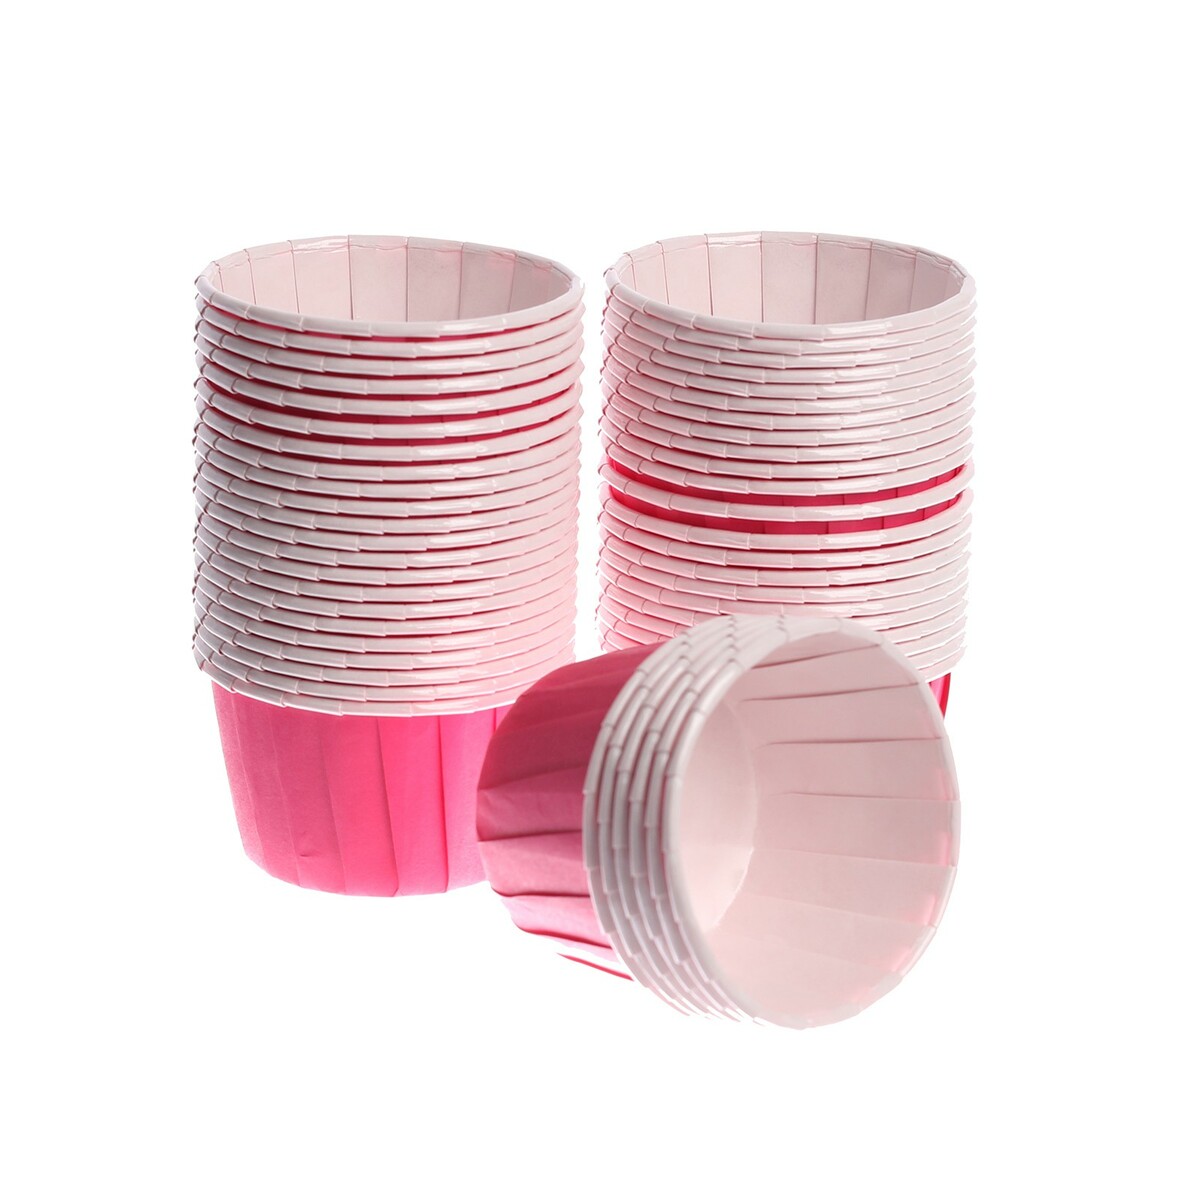 Тарталетка для кексов, набор, 50 шт., цвет розовый набор форм для выпечки кексов квадратные силиконовые ghidini 6 шт